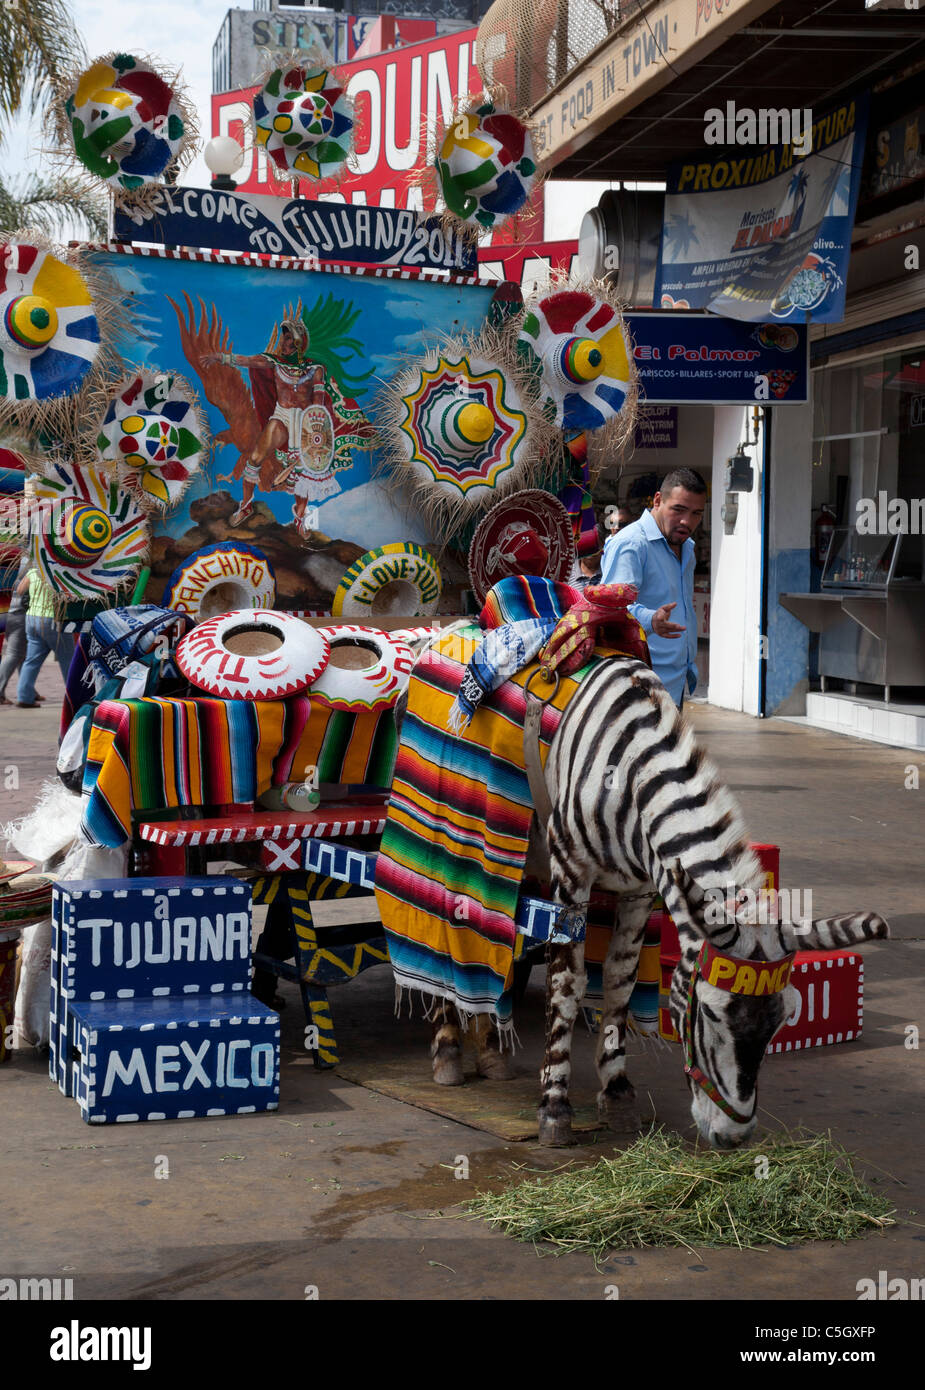 Tijuana, Mexico - A Tijuana zebra, which is a donkey painted with zebra stripes. Stock Photo